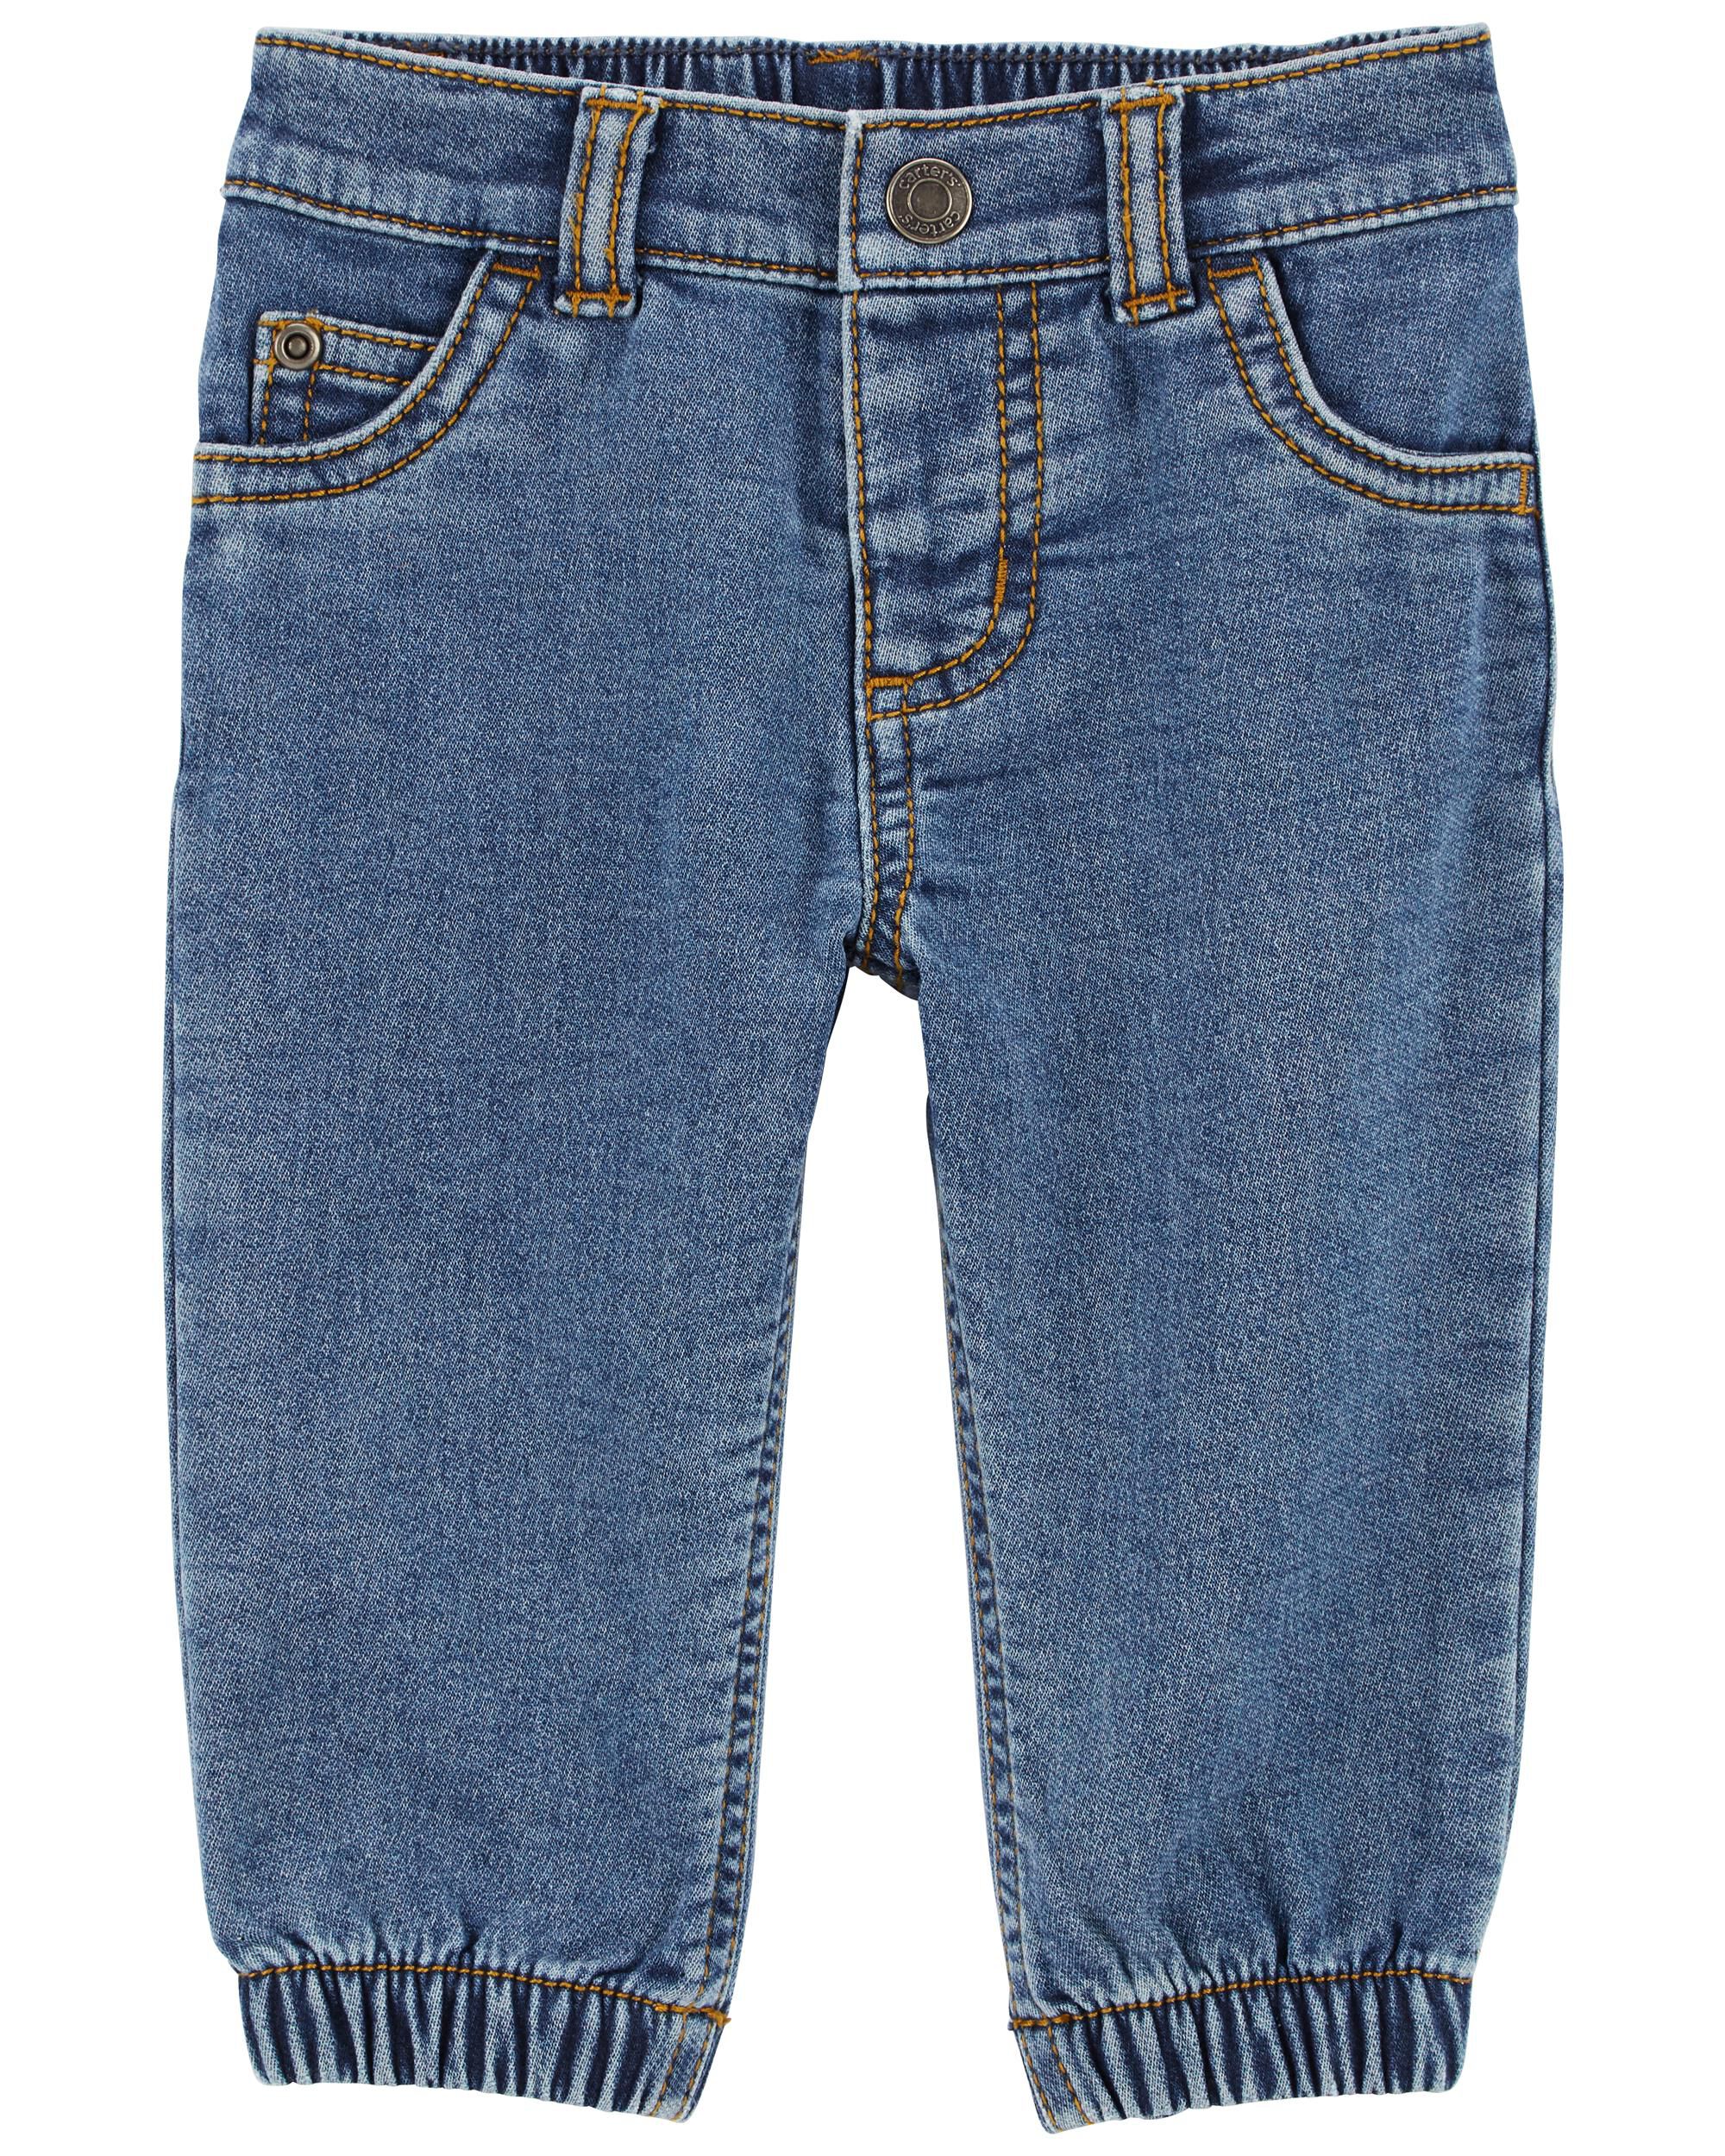 Детские джинсовые джинсы Carter's